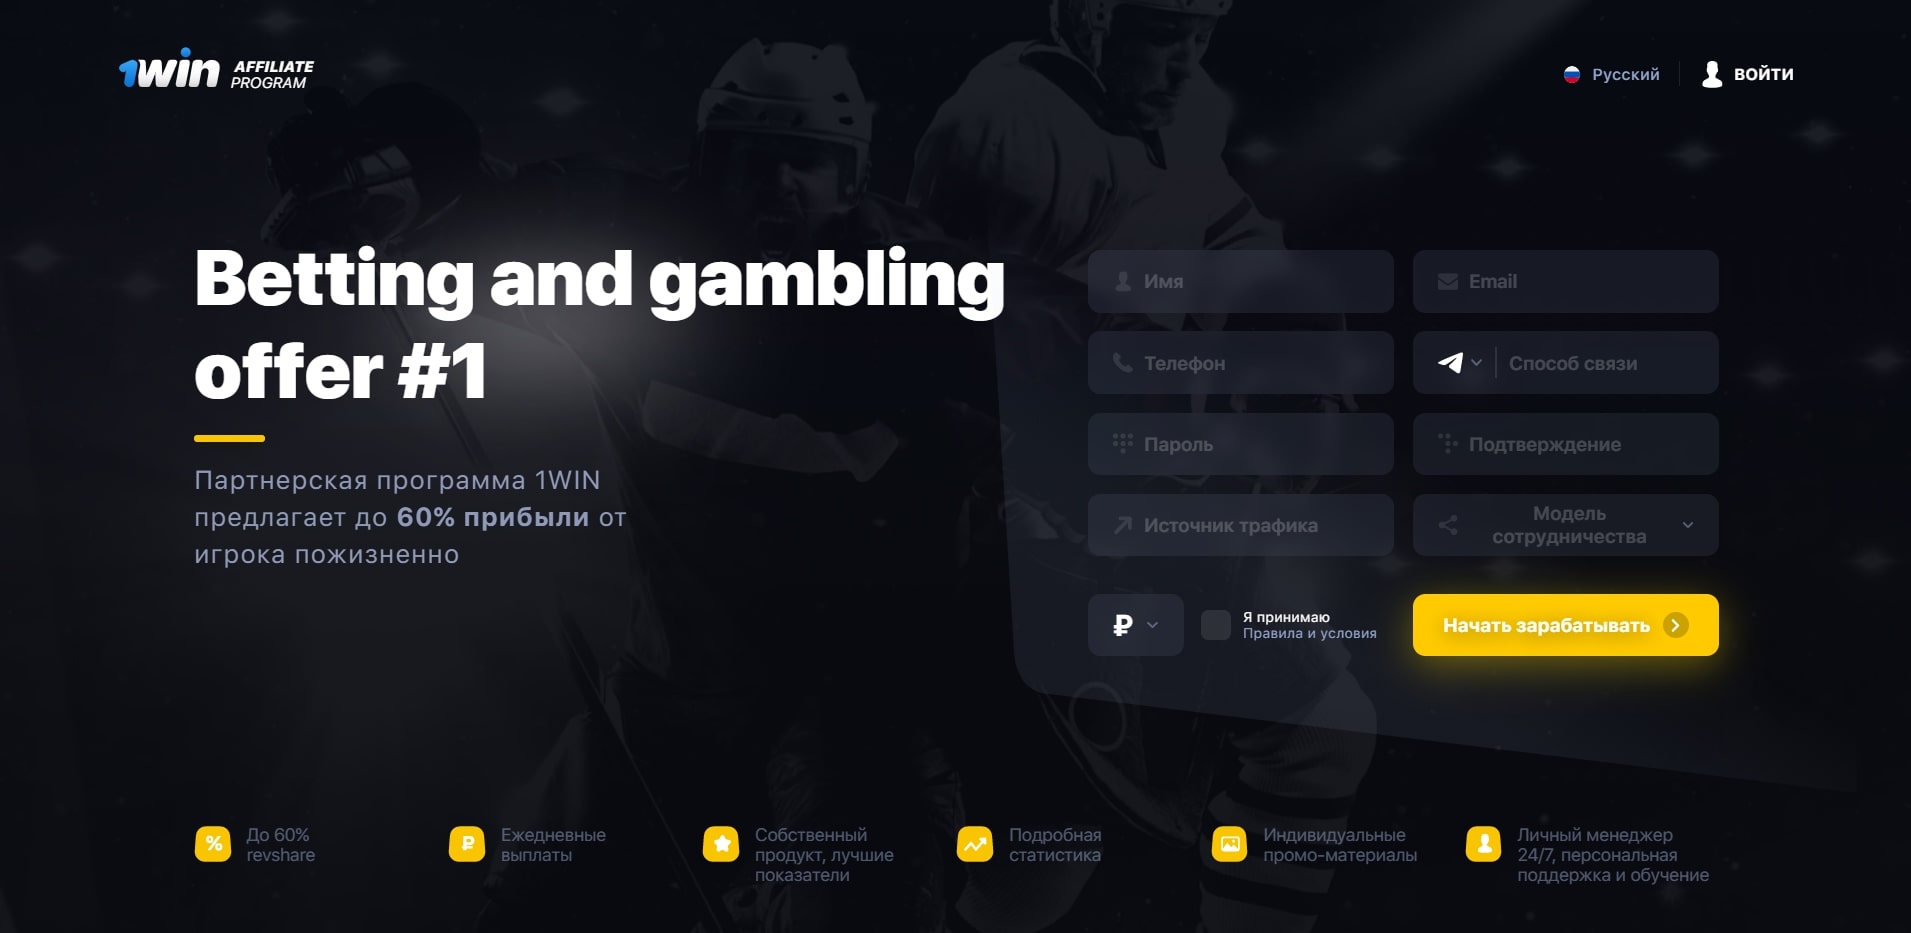 Вы начали онлайн казино ради страсти или денег?